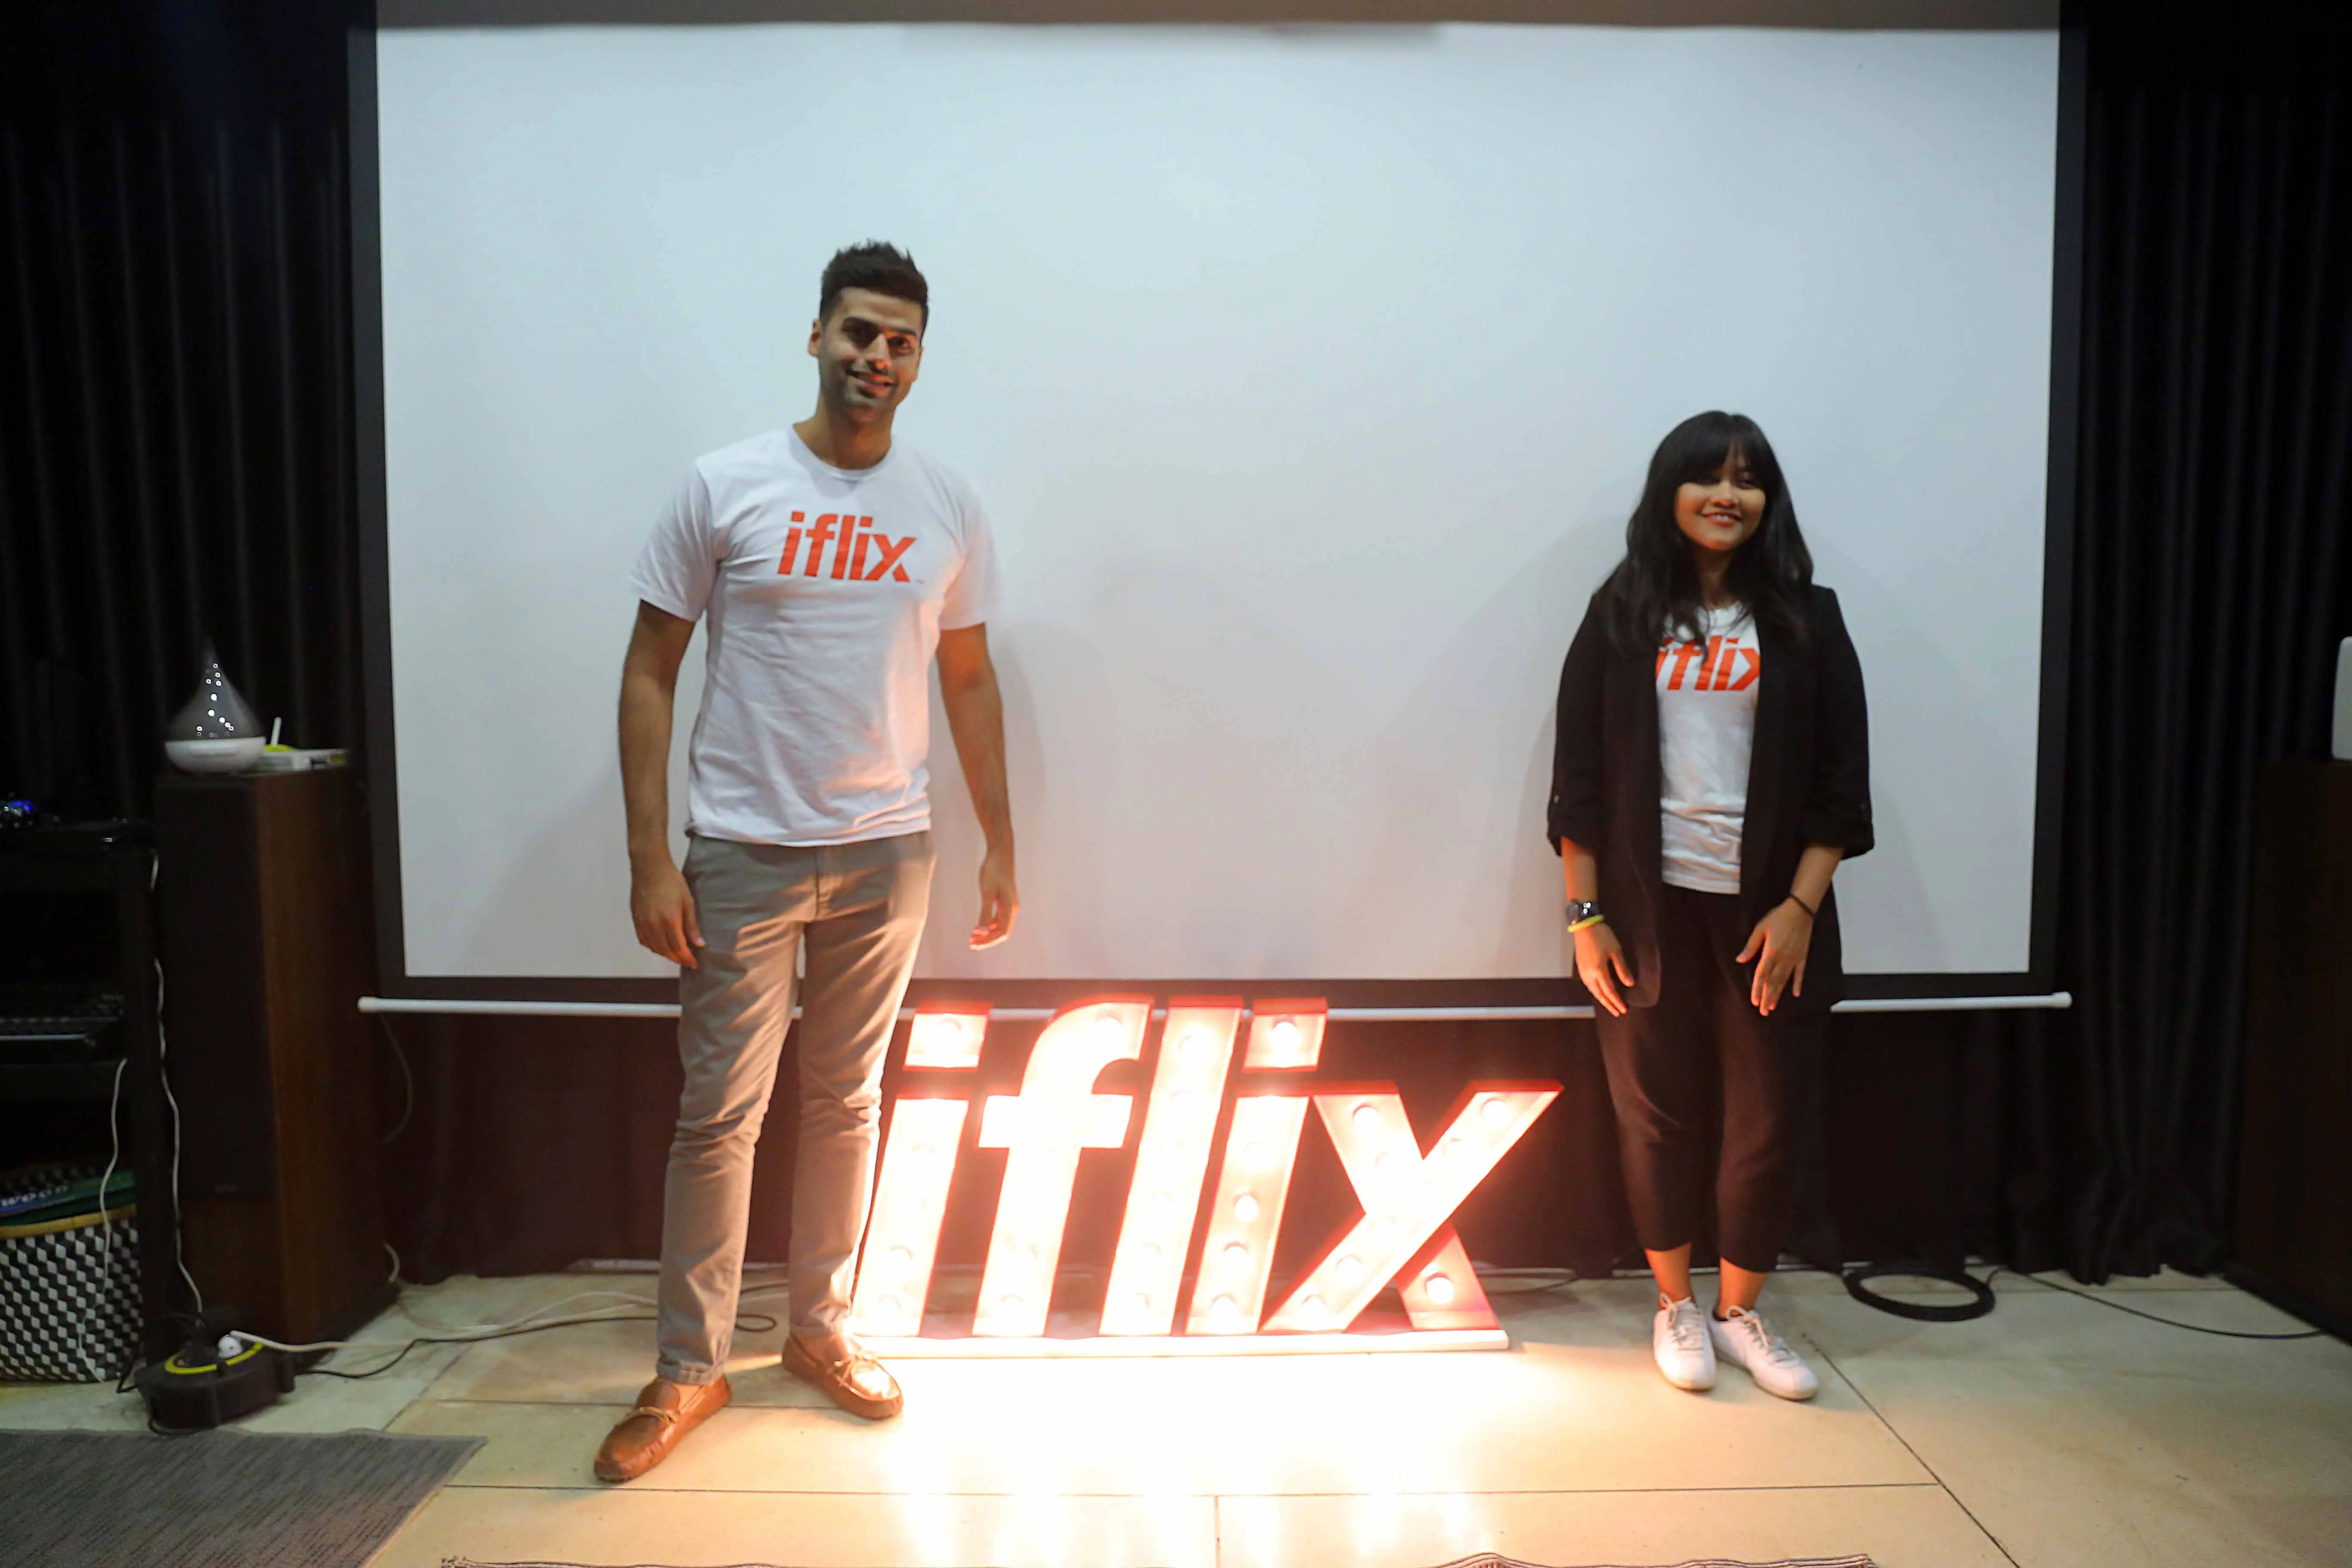 [Bintang] Iflix